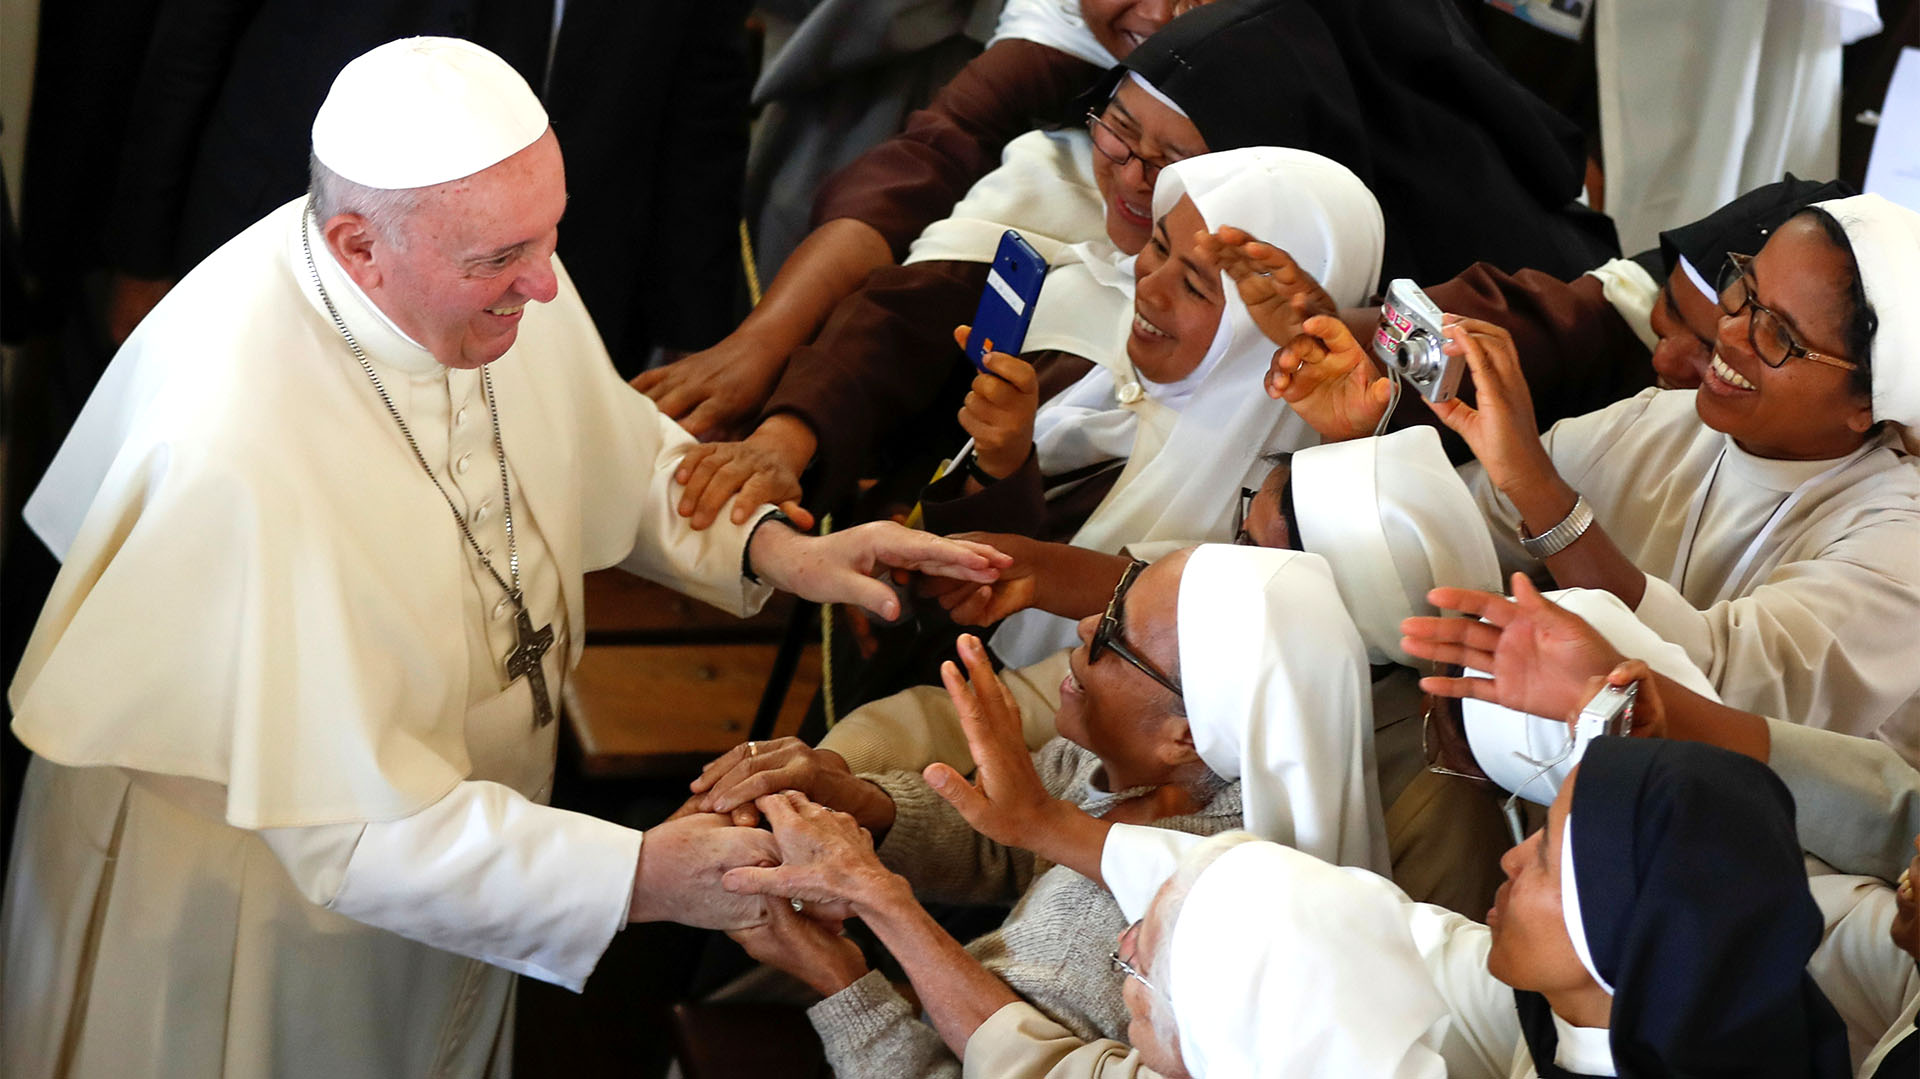 El papa Francisco incluirá a mujeres en los comités que definen el nombramiento de obispos